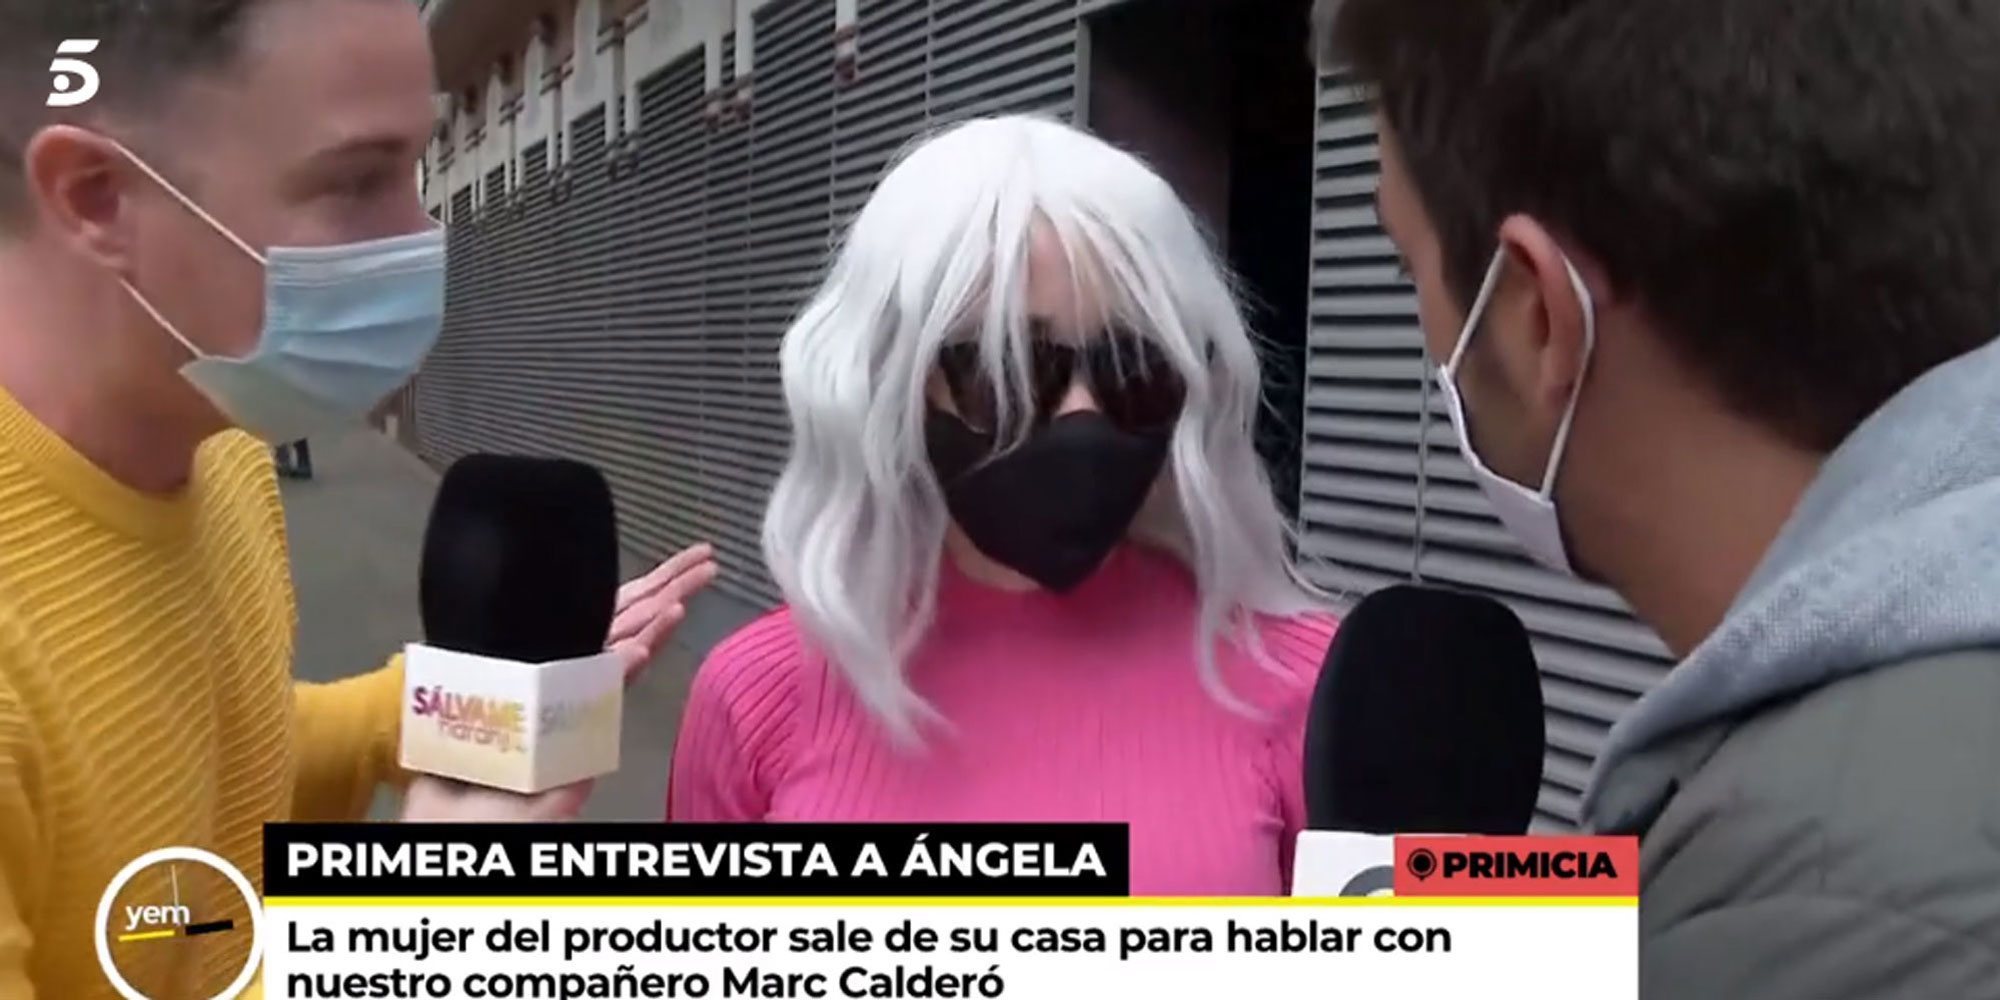 La surrealista aparición de Angela Dobrowolski con peluca para ofrecer cruasanes a los medios